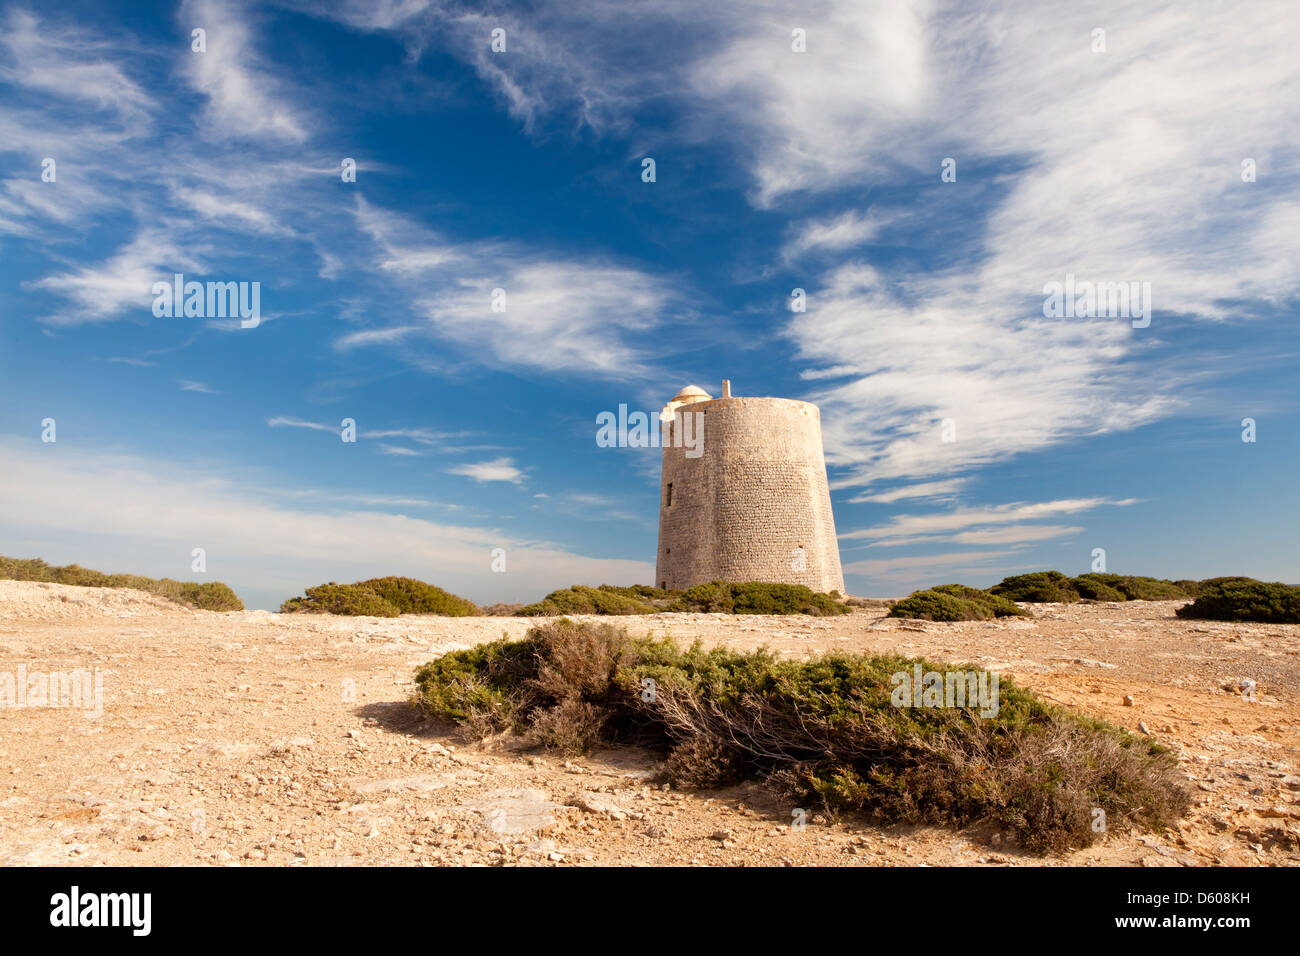 Torre di avvistamento di Ses Portes nel Parco Naturale di Ses Salines a Sant Francesc de S'Estany, Ibiza, Illes Balears, Spagna Foto Stock